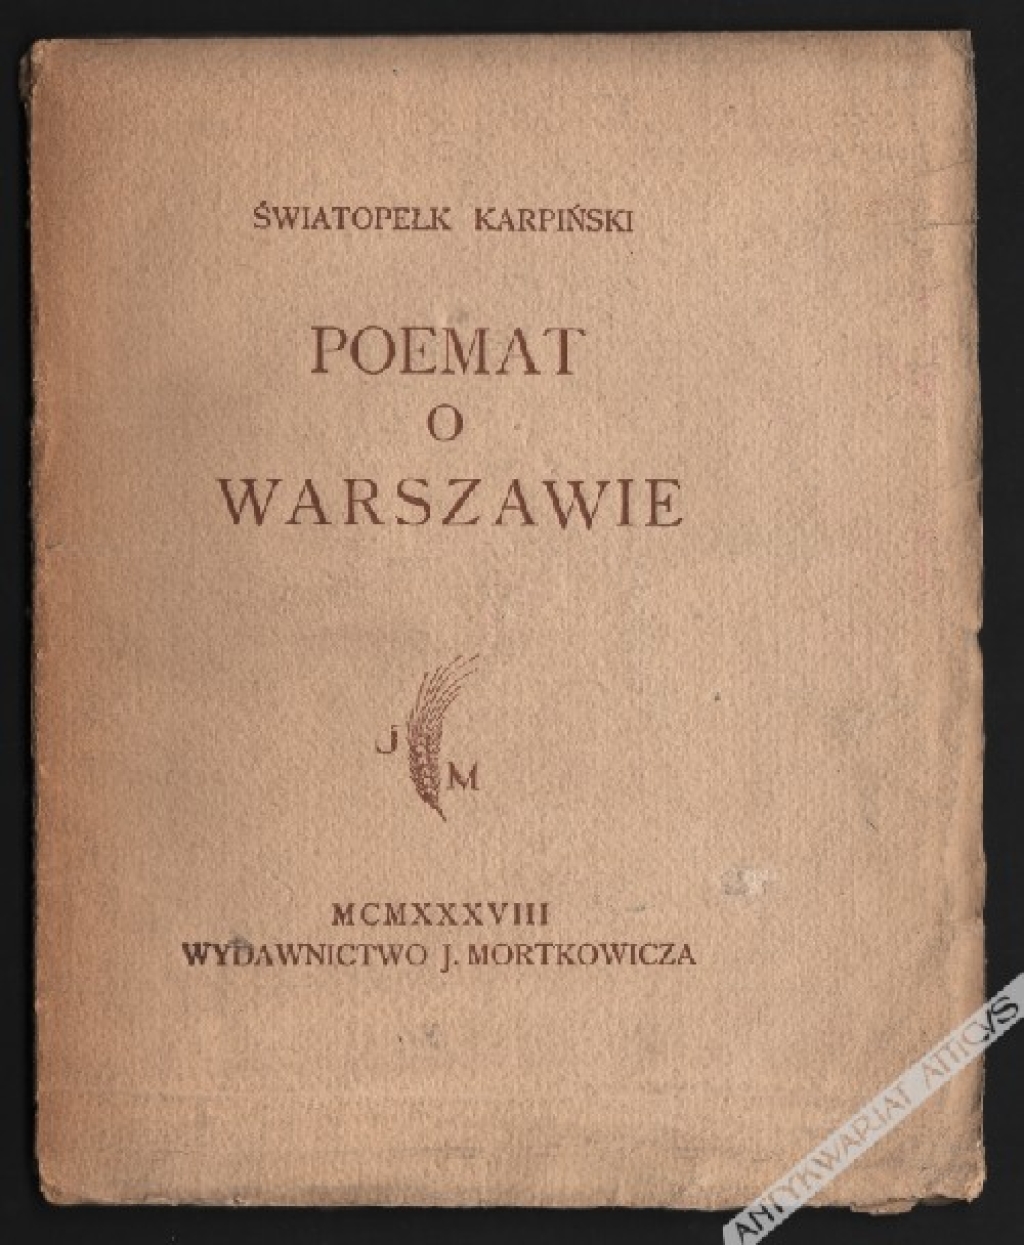 Poemat o Warszawie